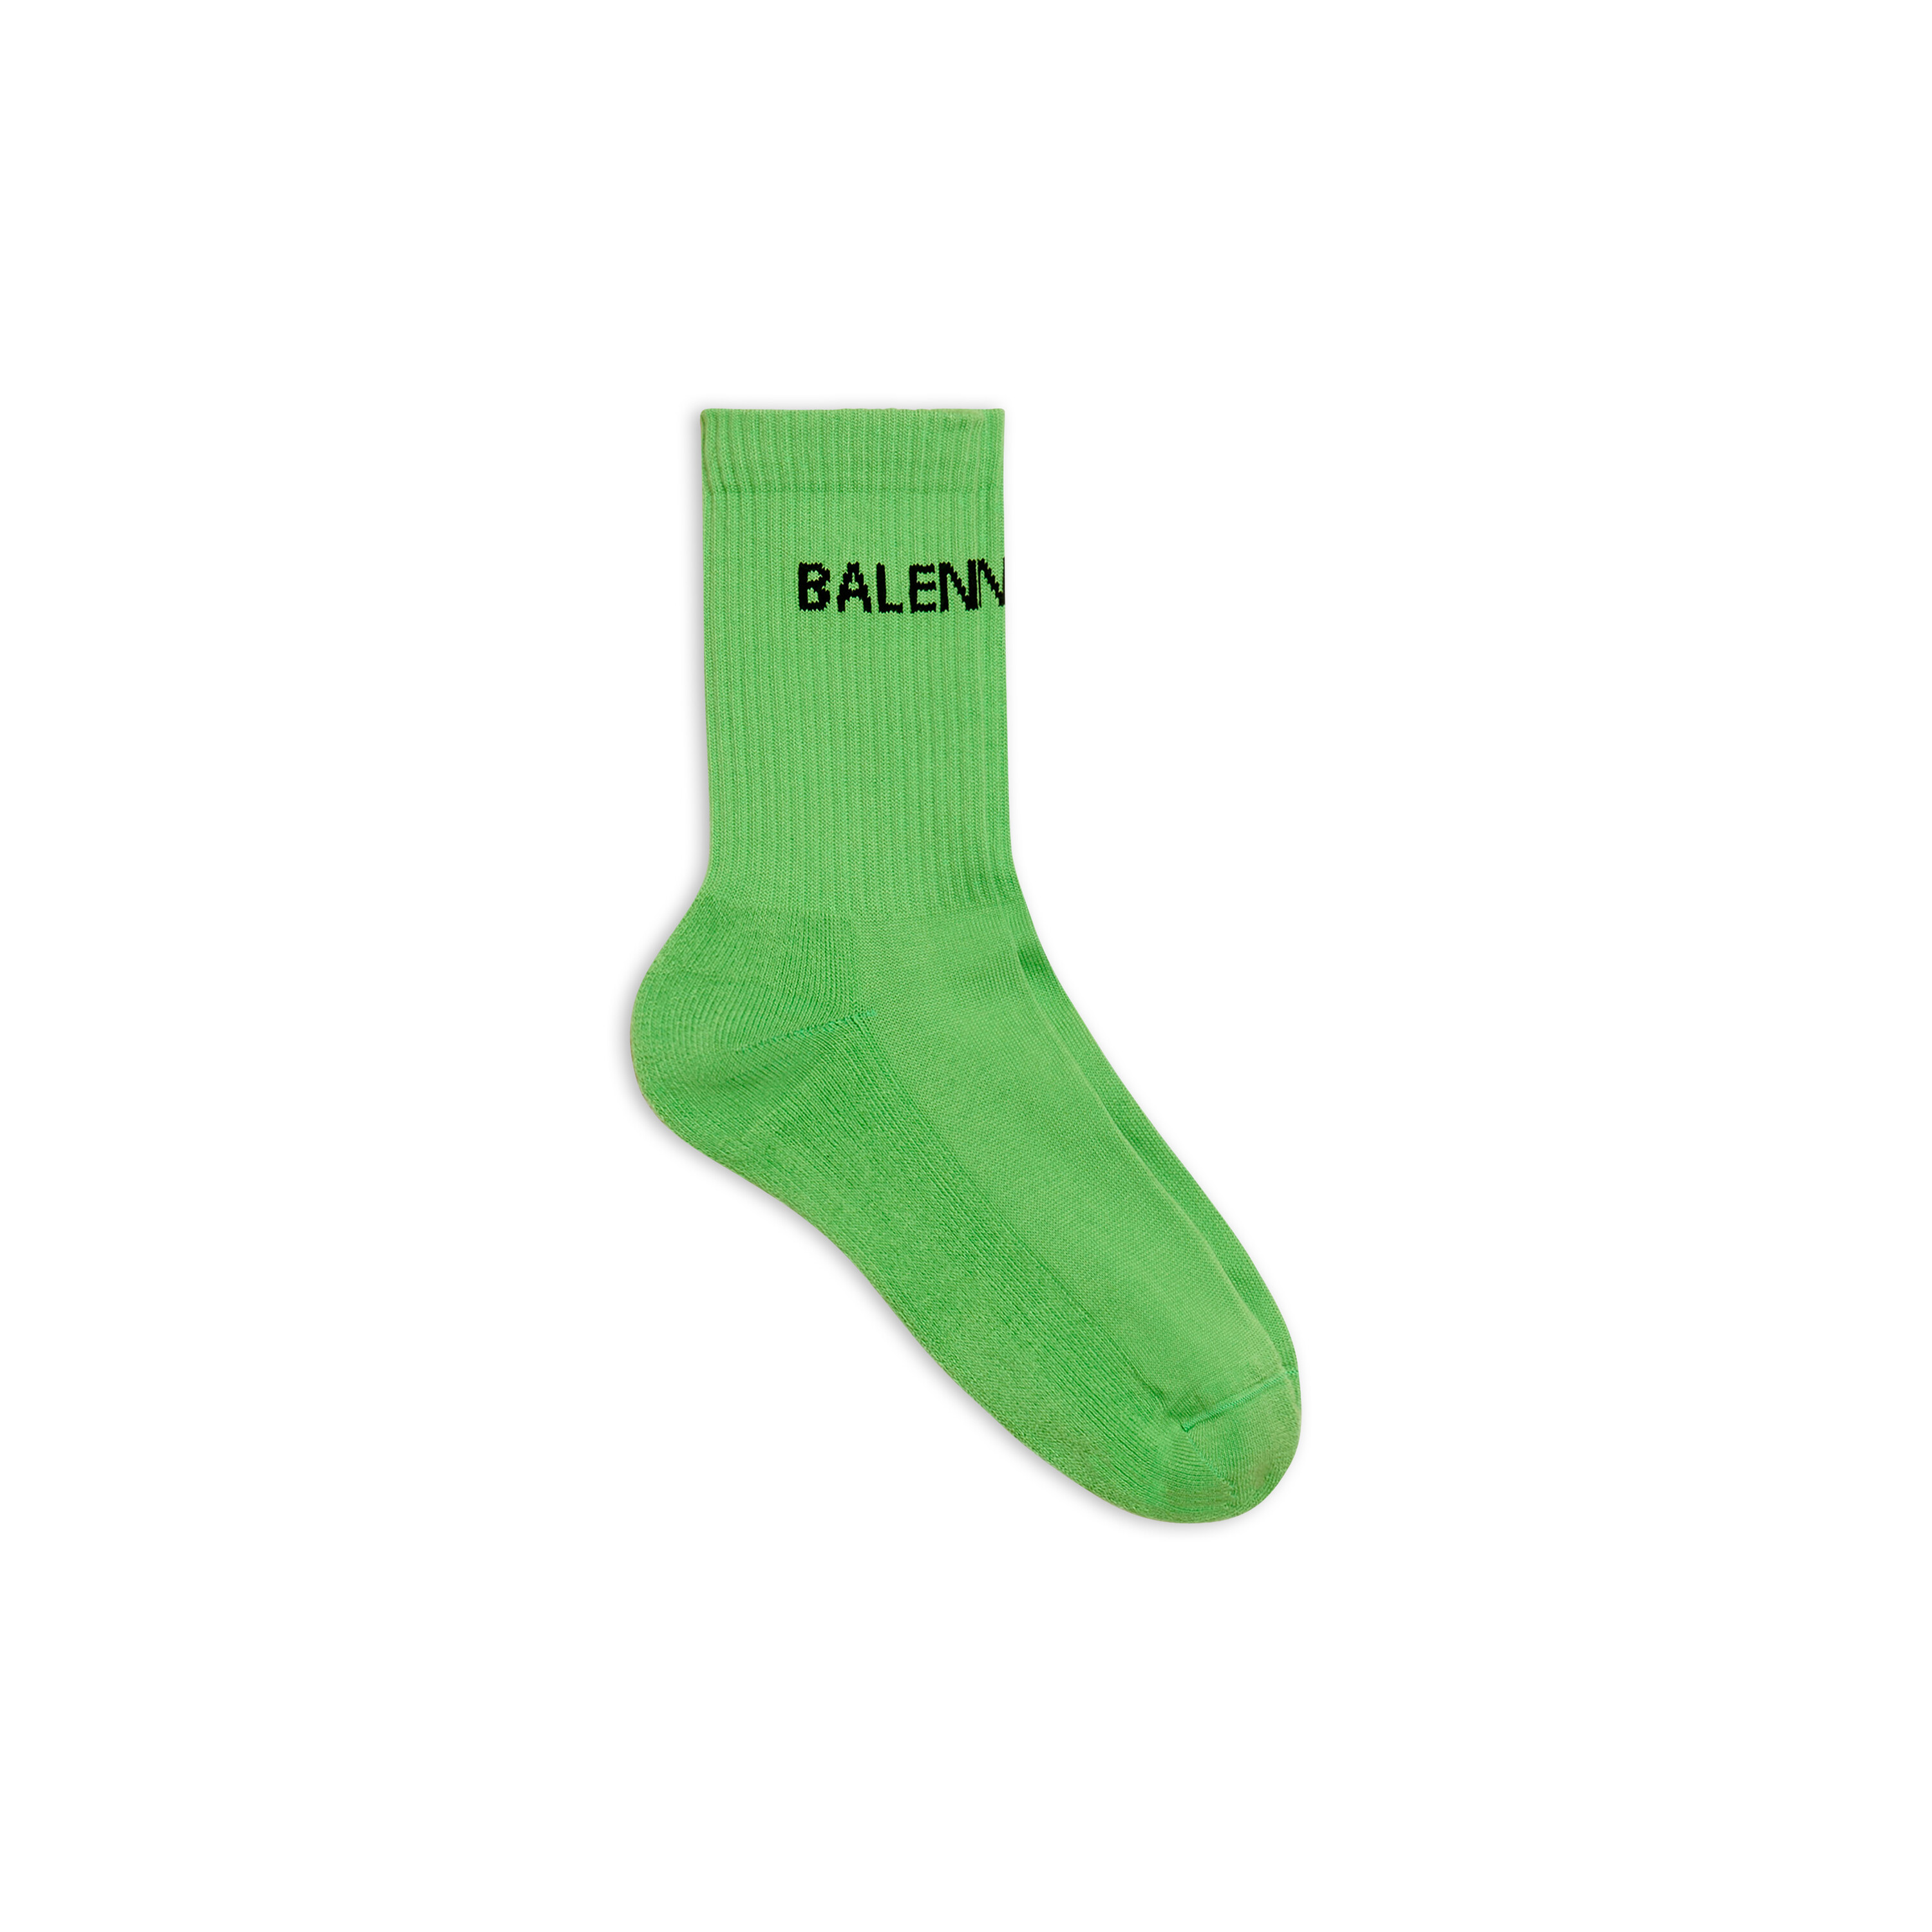 Mens Balenciaga Socks in Black  Balenciaga NL